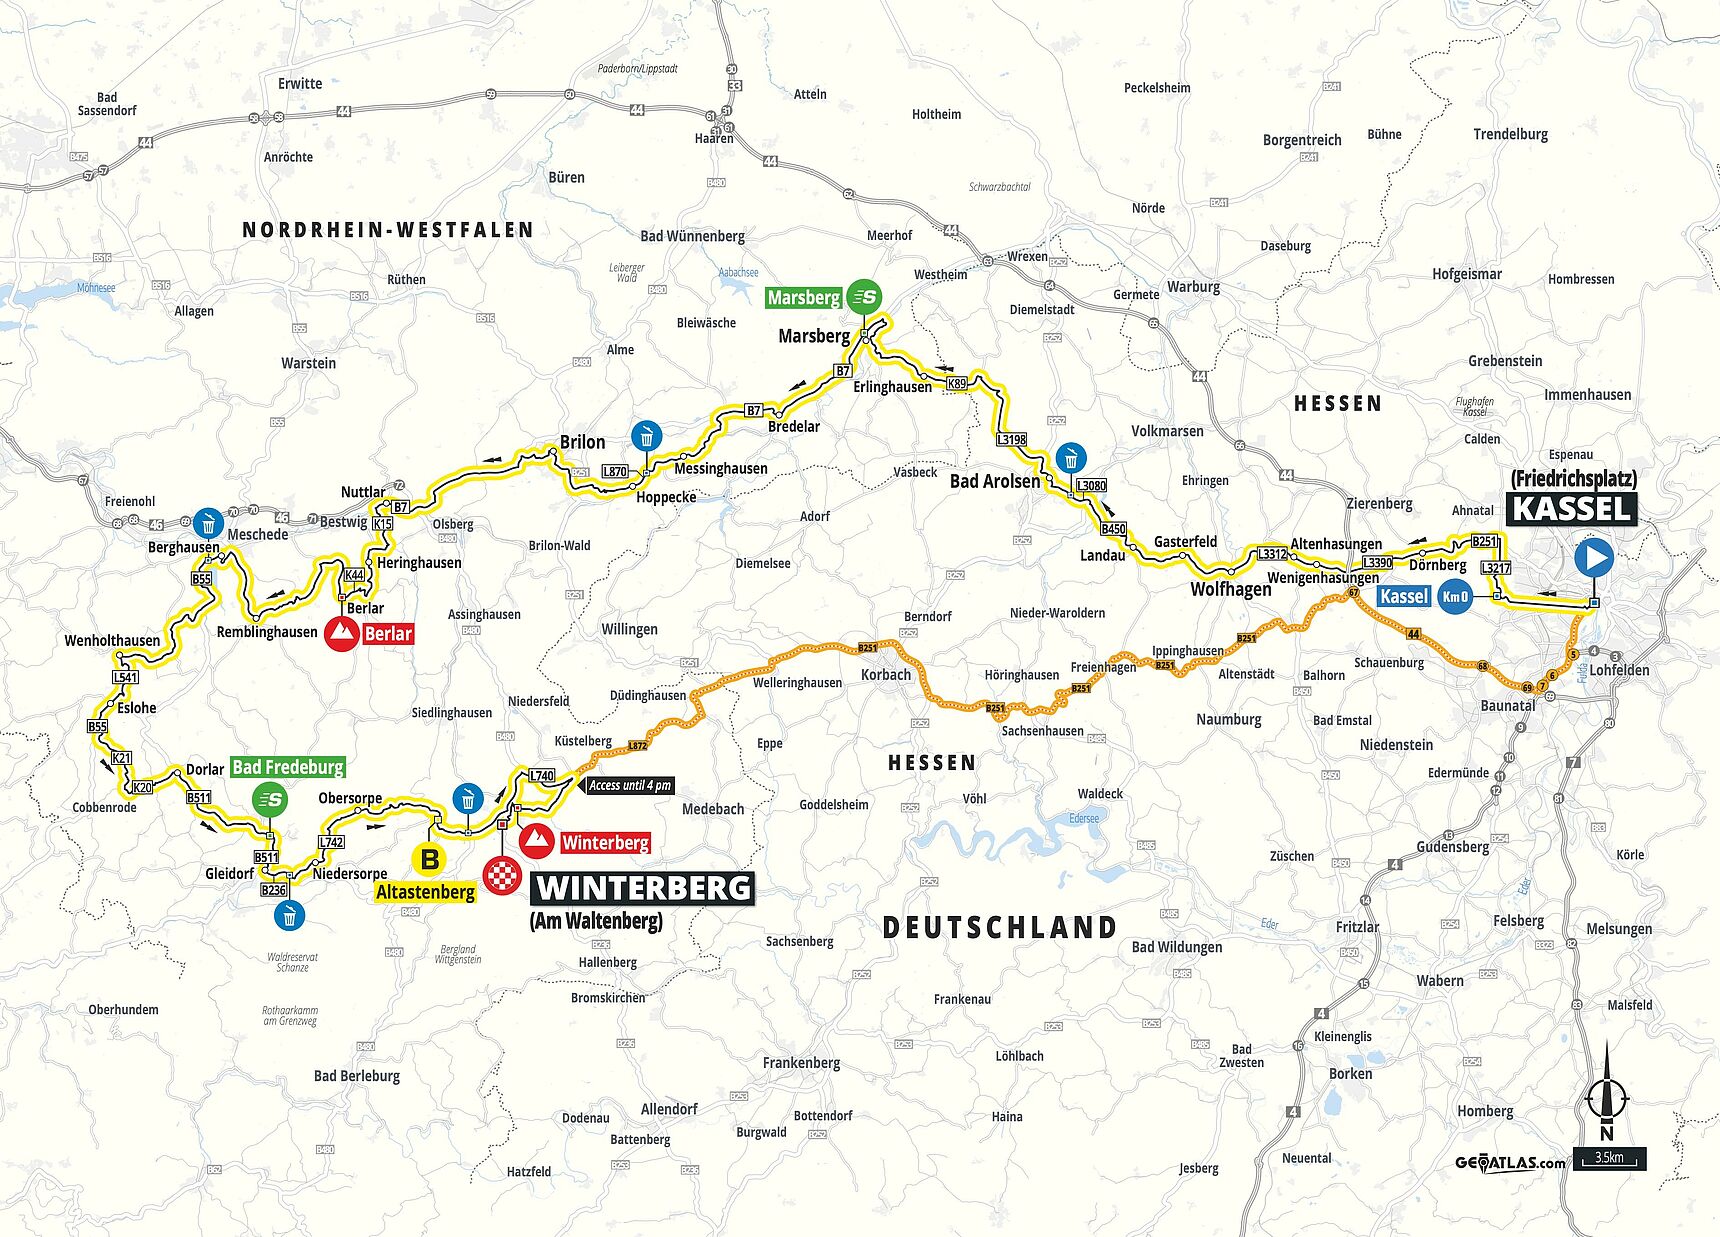 Deutschland Tour Offizielle Homepage der Profirundfahrt Deutschland